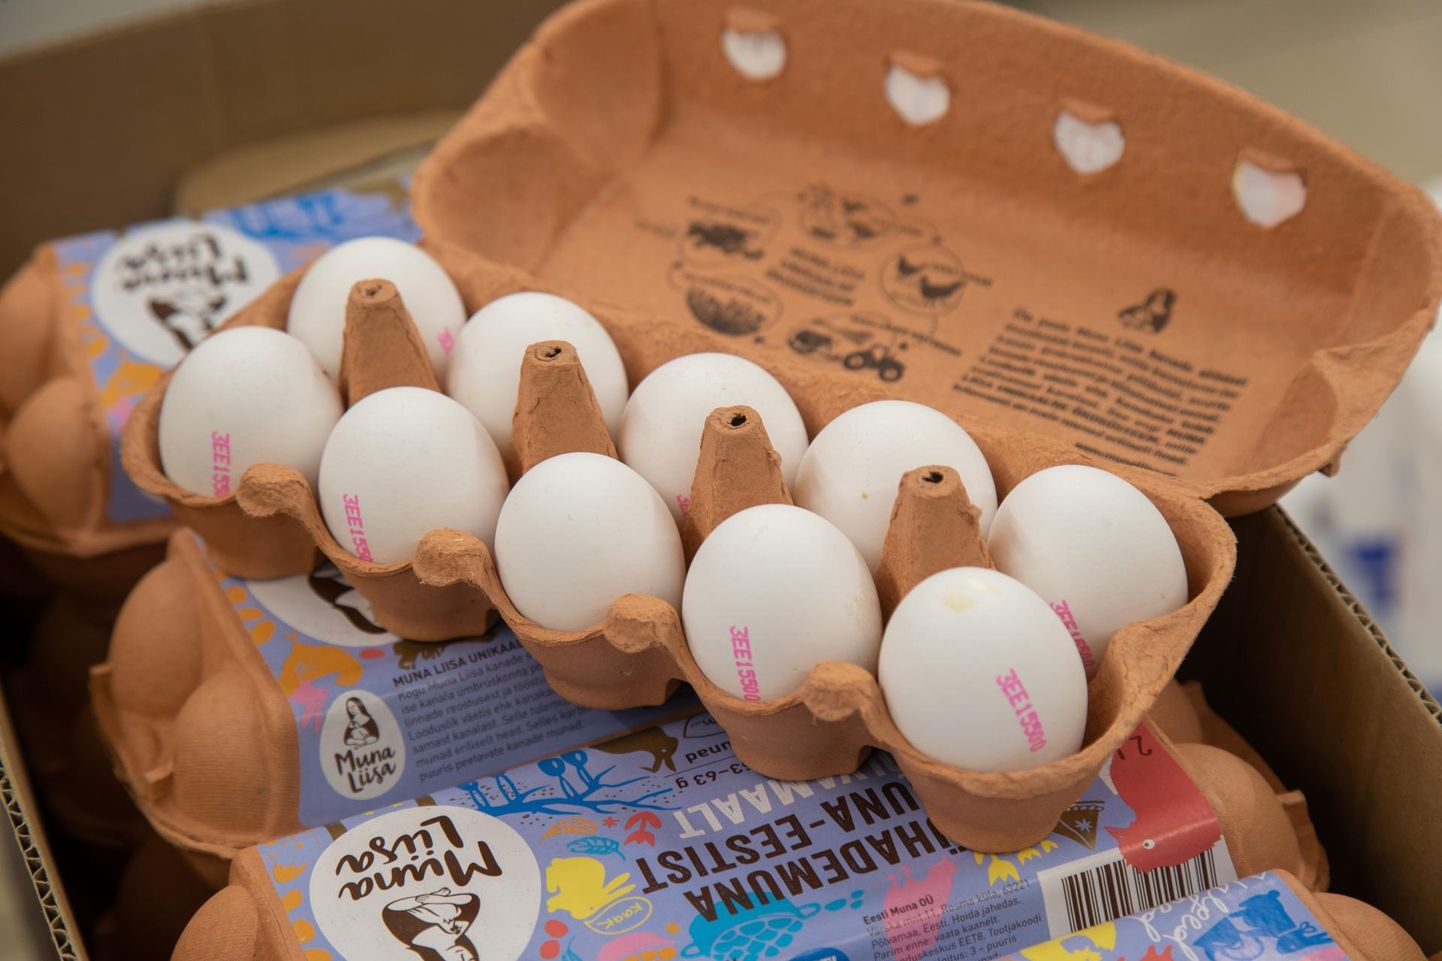 Lihavõtete ajal on populaarne munade värvimine, mistõttu eelistavad tarbijad osta valgeid kanamune.